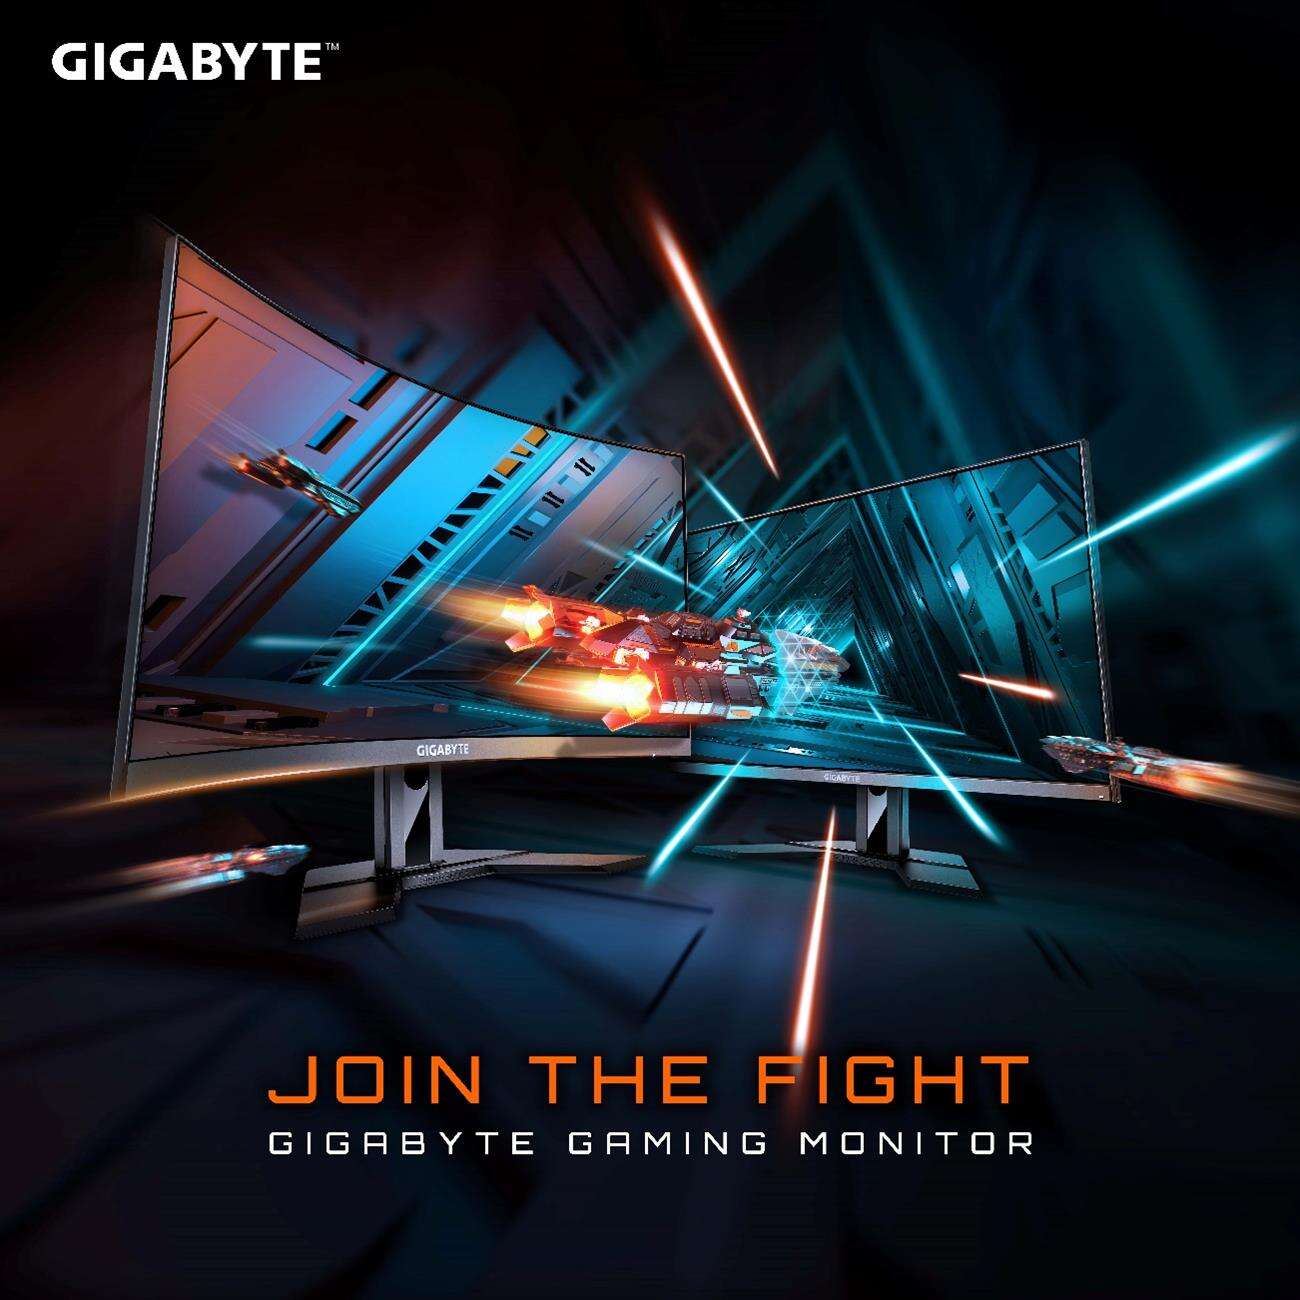 monitory Gigabyte, plany Gigabyte